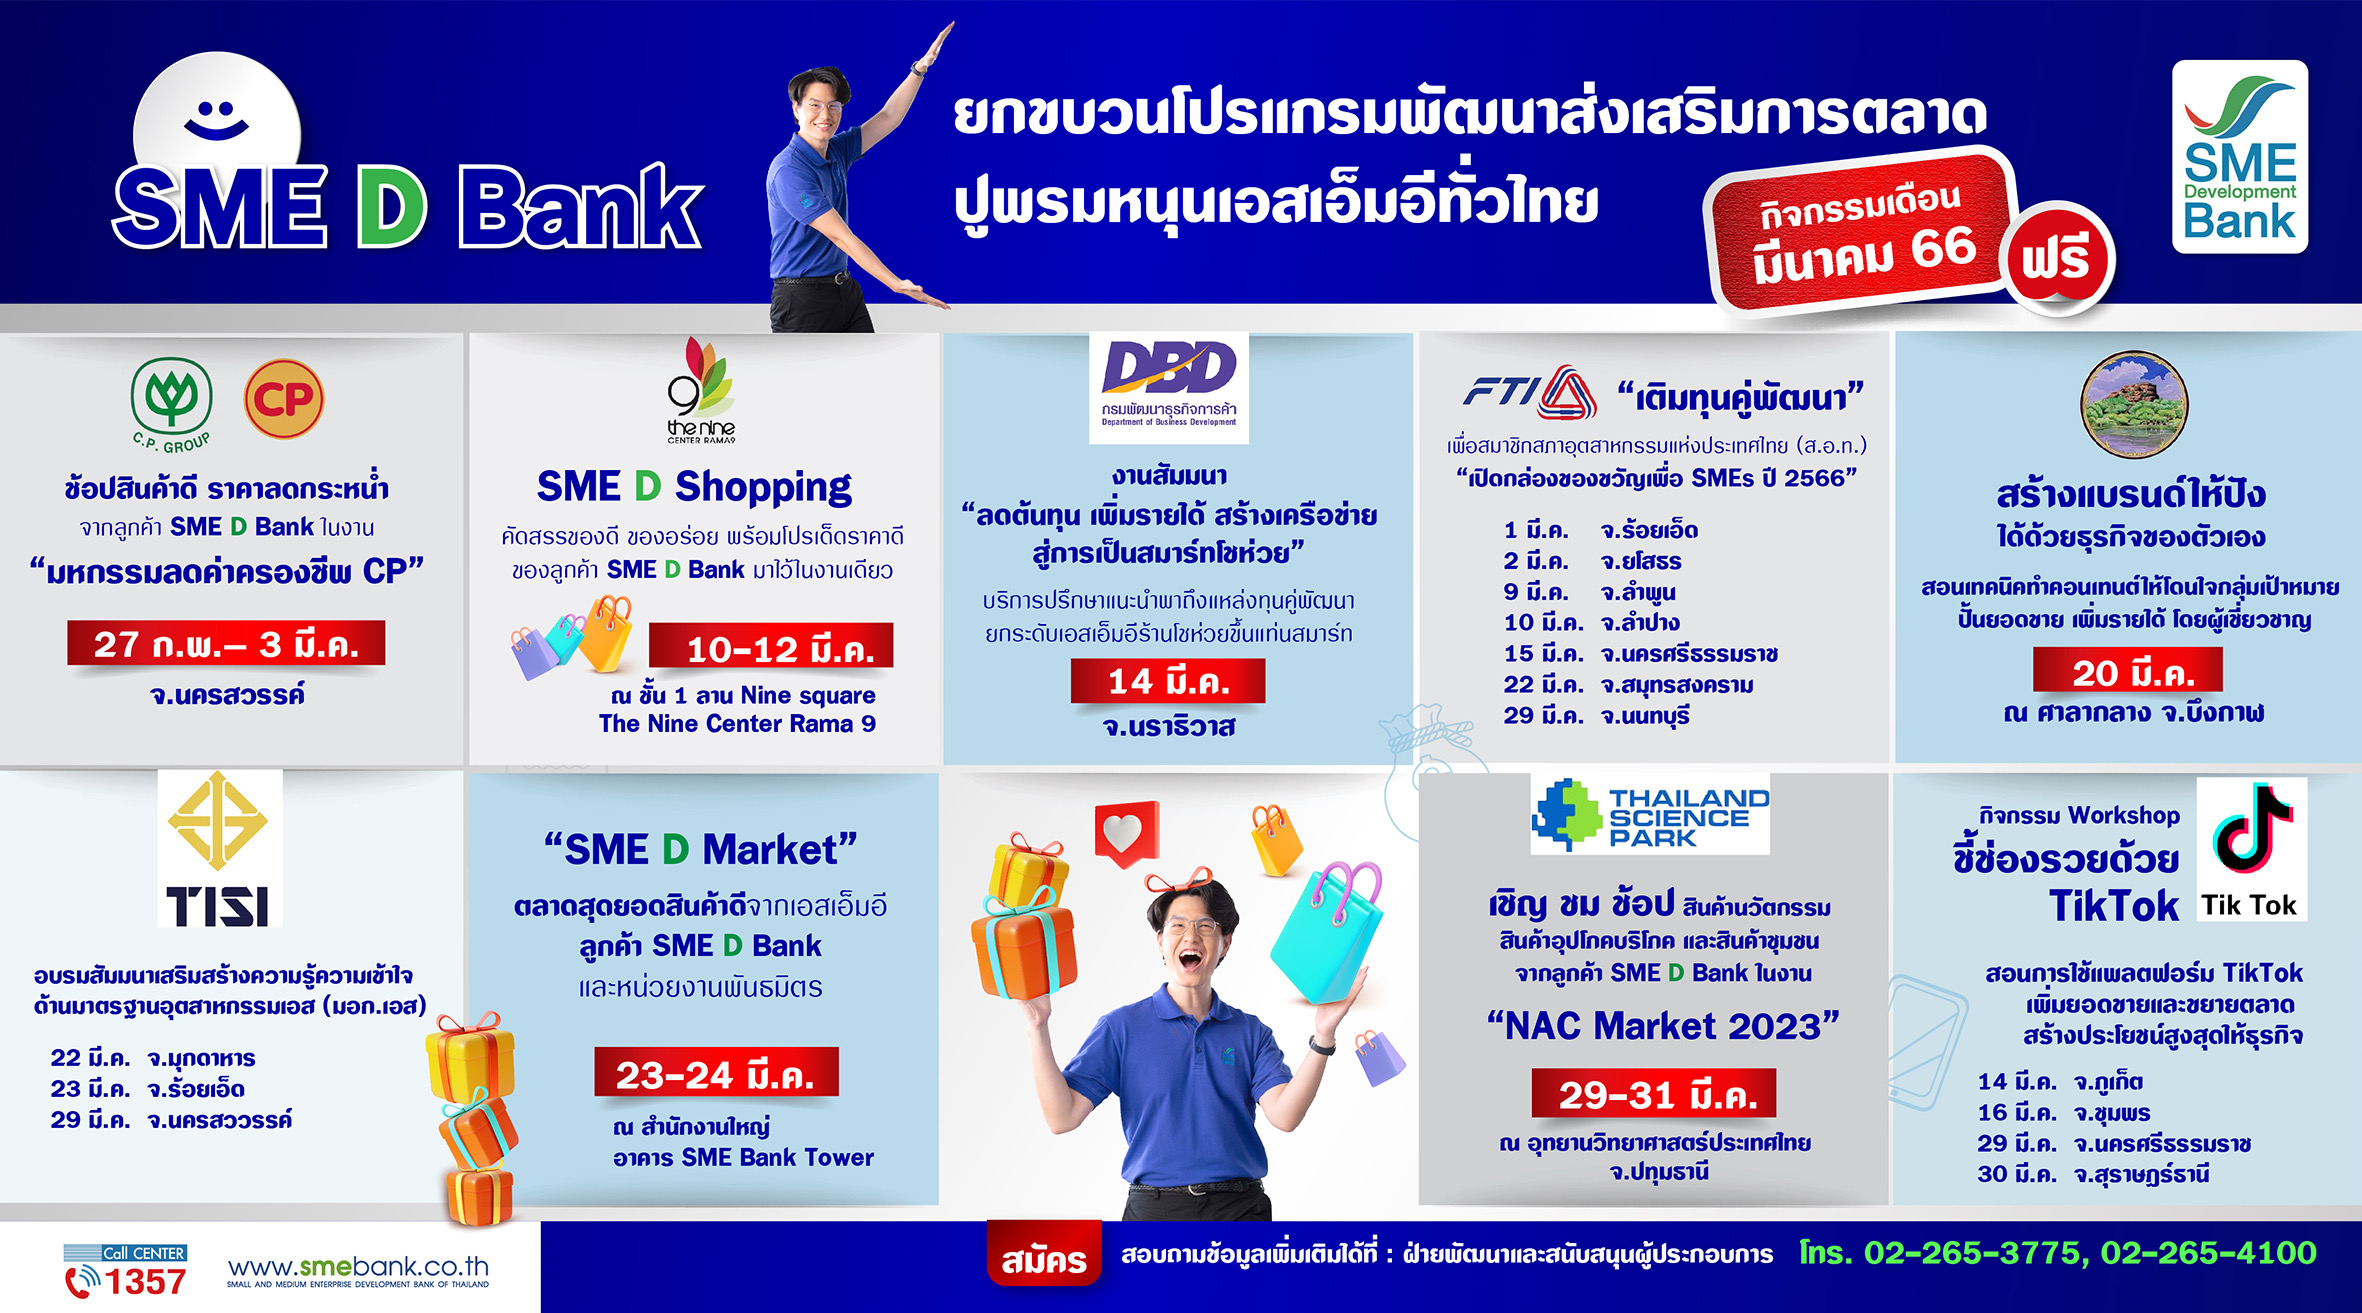 SME D Bank จัด 9 โปรแกรมพัฒนาส่งเสริมการตลาด ตลอดเดือน มี.ค.66